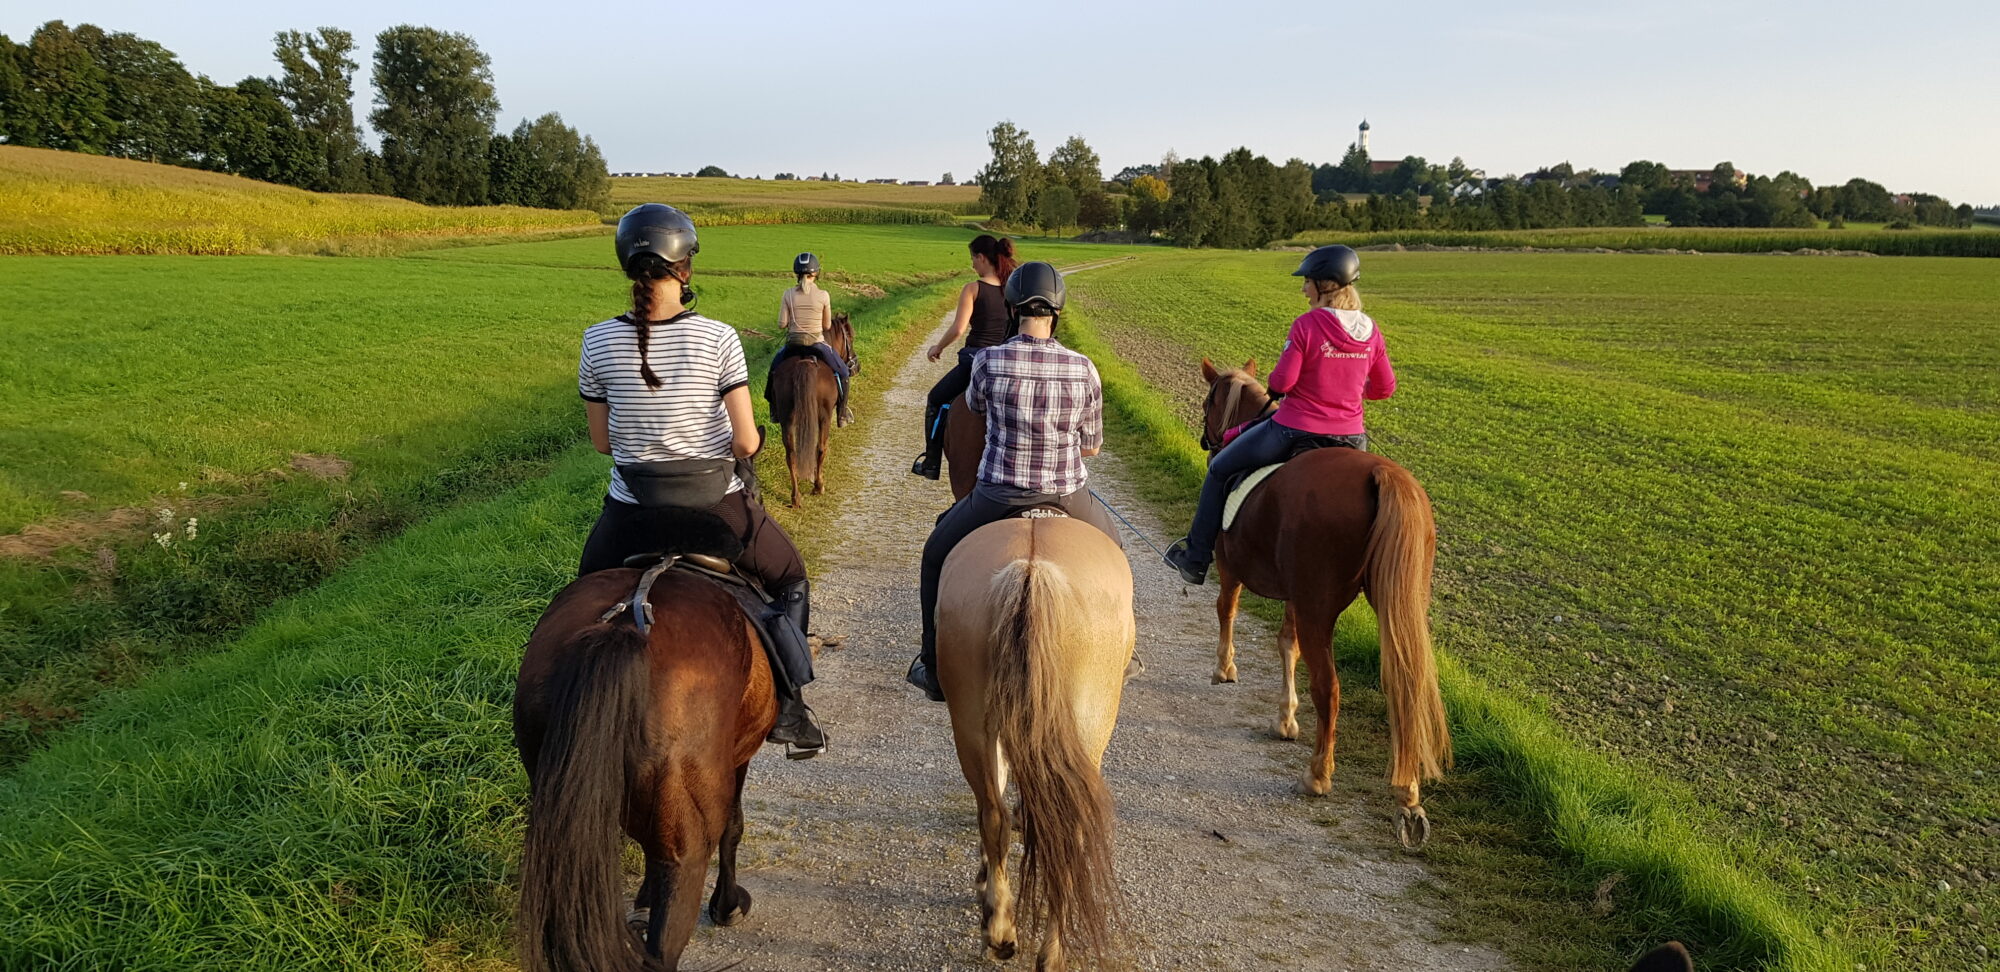 Fünf Frauen reiten auf Pferden über einen Feldweg. Links und rechts von Ihnen sind Felder. Der Himmel ist blau. Im Hintergrund ist ein Dorf zu sehen, dessen Kirchturm weiter überragt.